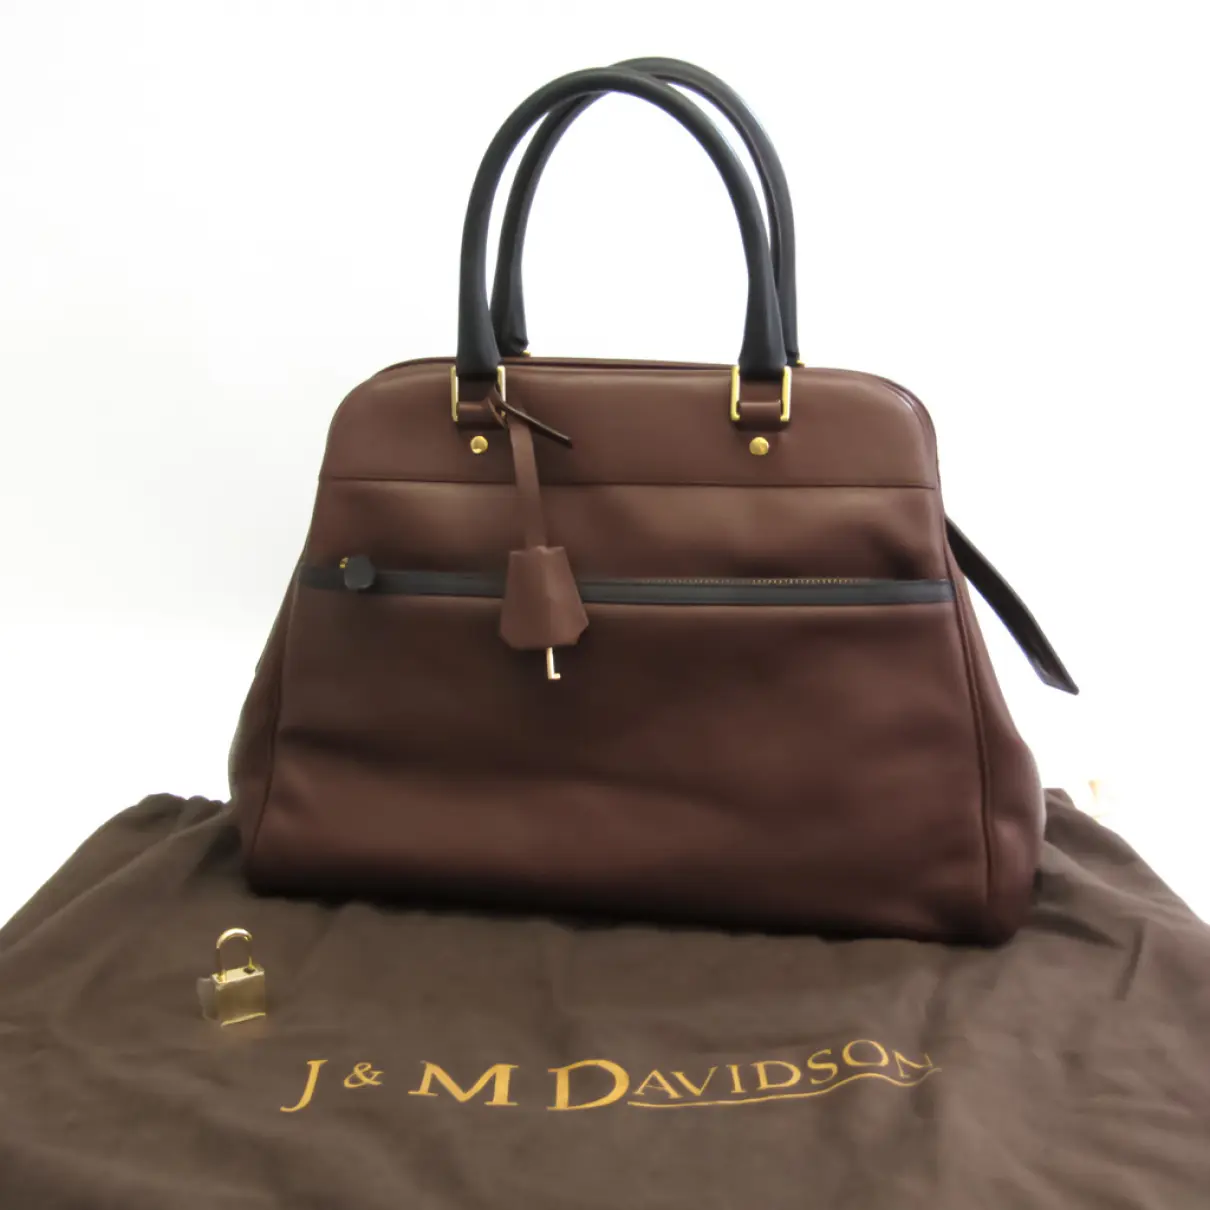 Buy J & M Davidson Leather handbag online